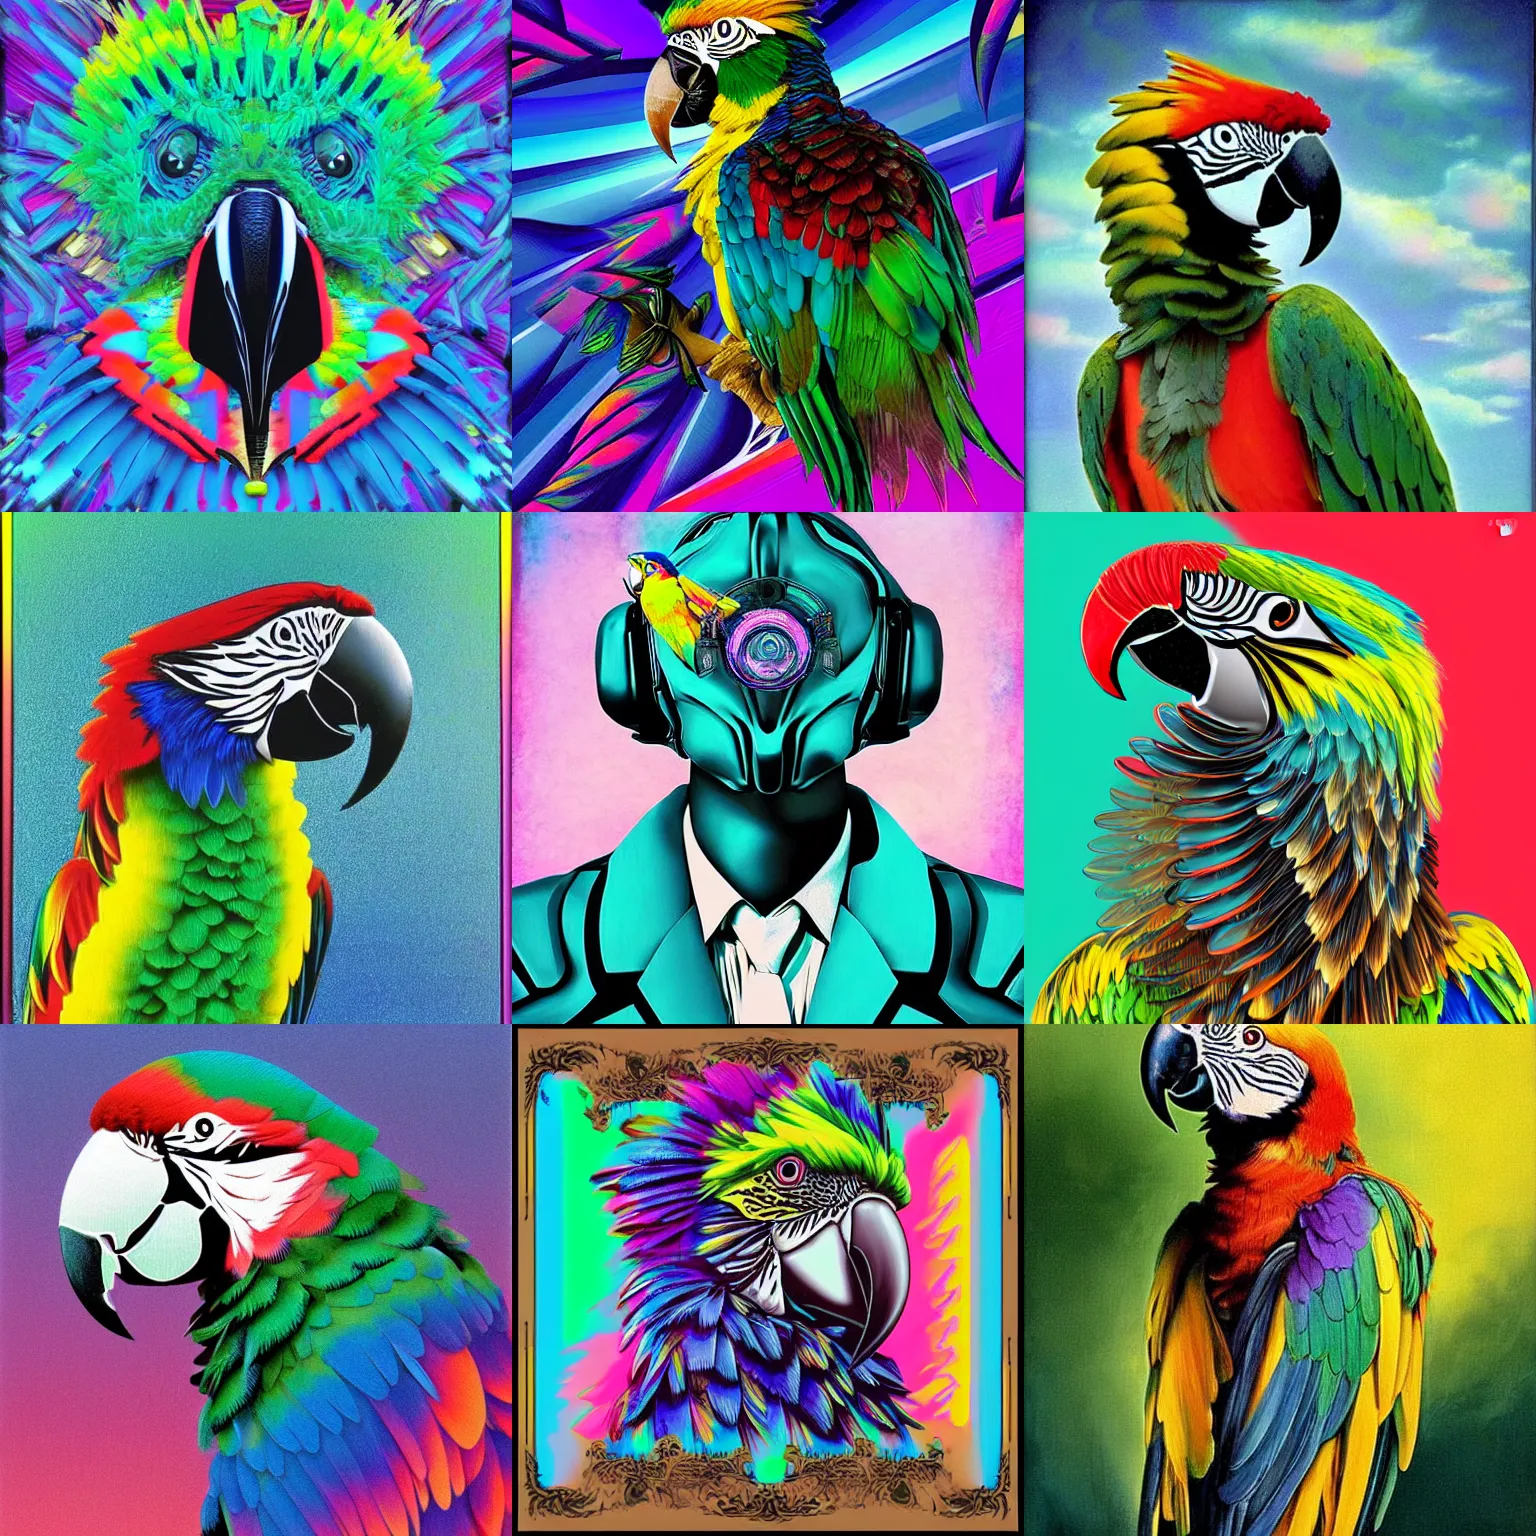 Prompt: parrot transformer, intricate vaporwave portrait by john singer sargent